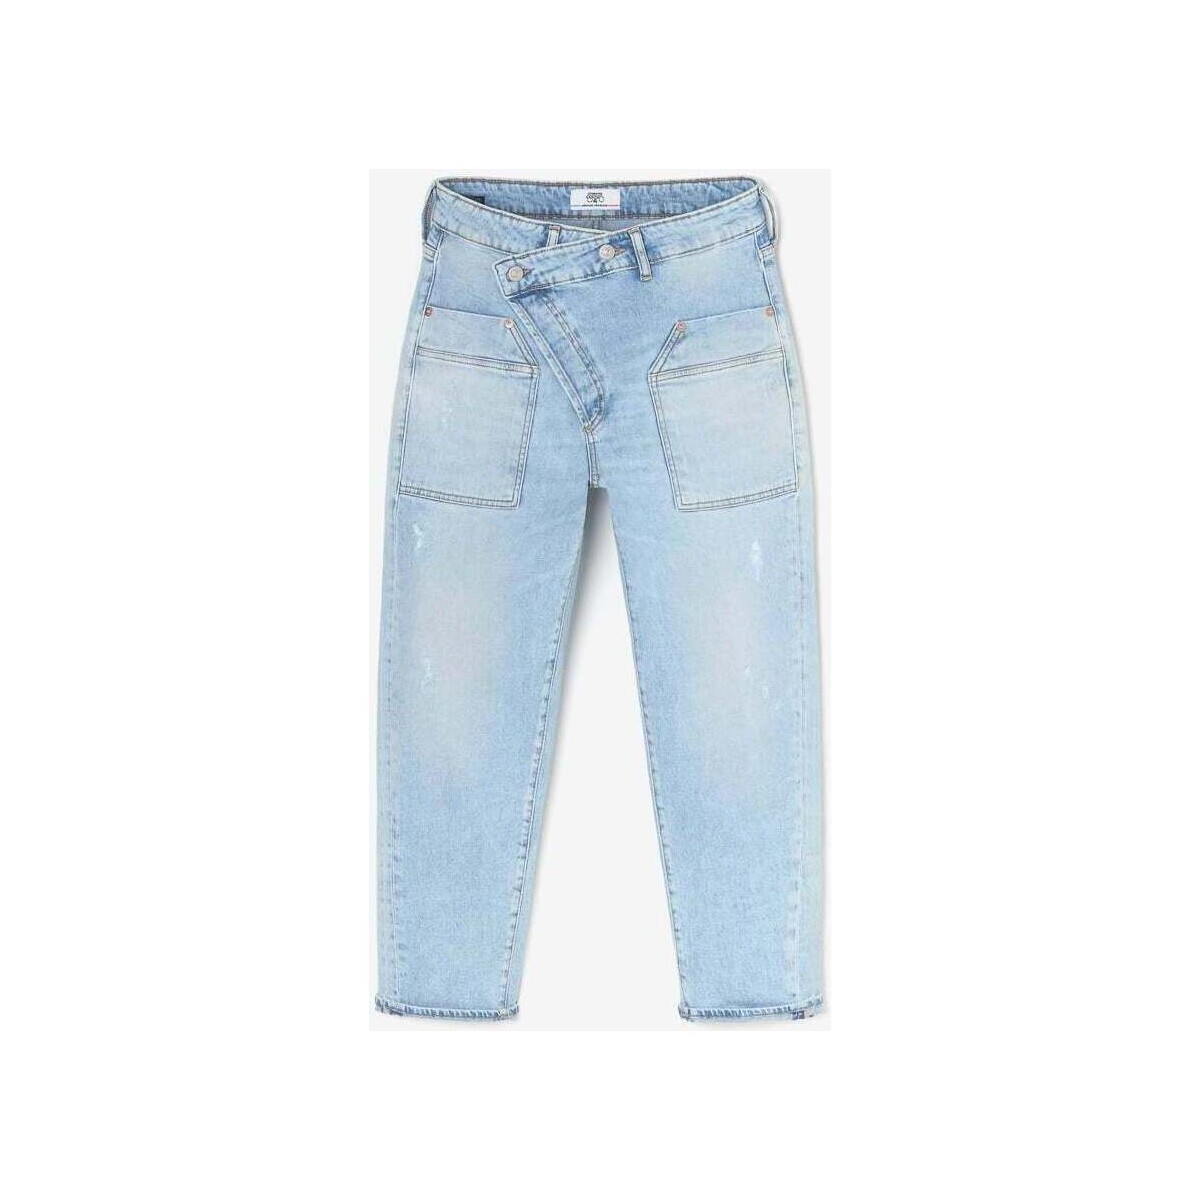 Vêtements Femme Jeans Le Temps des Cerises Cosy pocket boyfit 7/8ème jeans destroy bleu Bleu